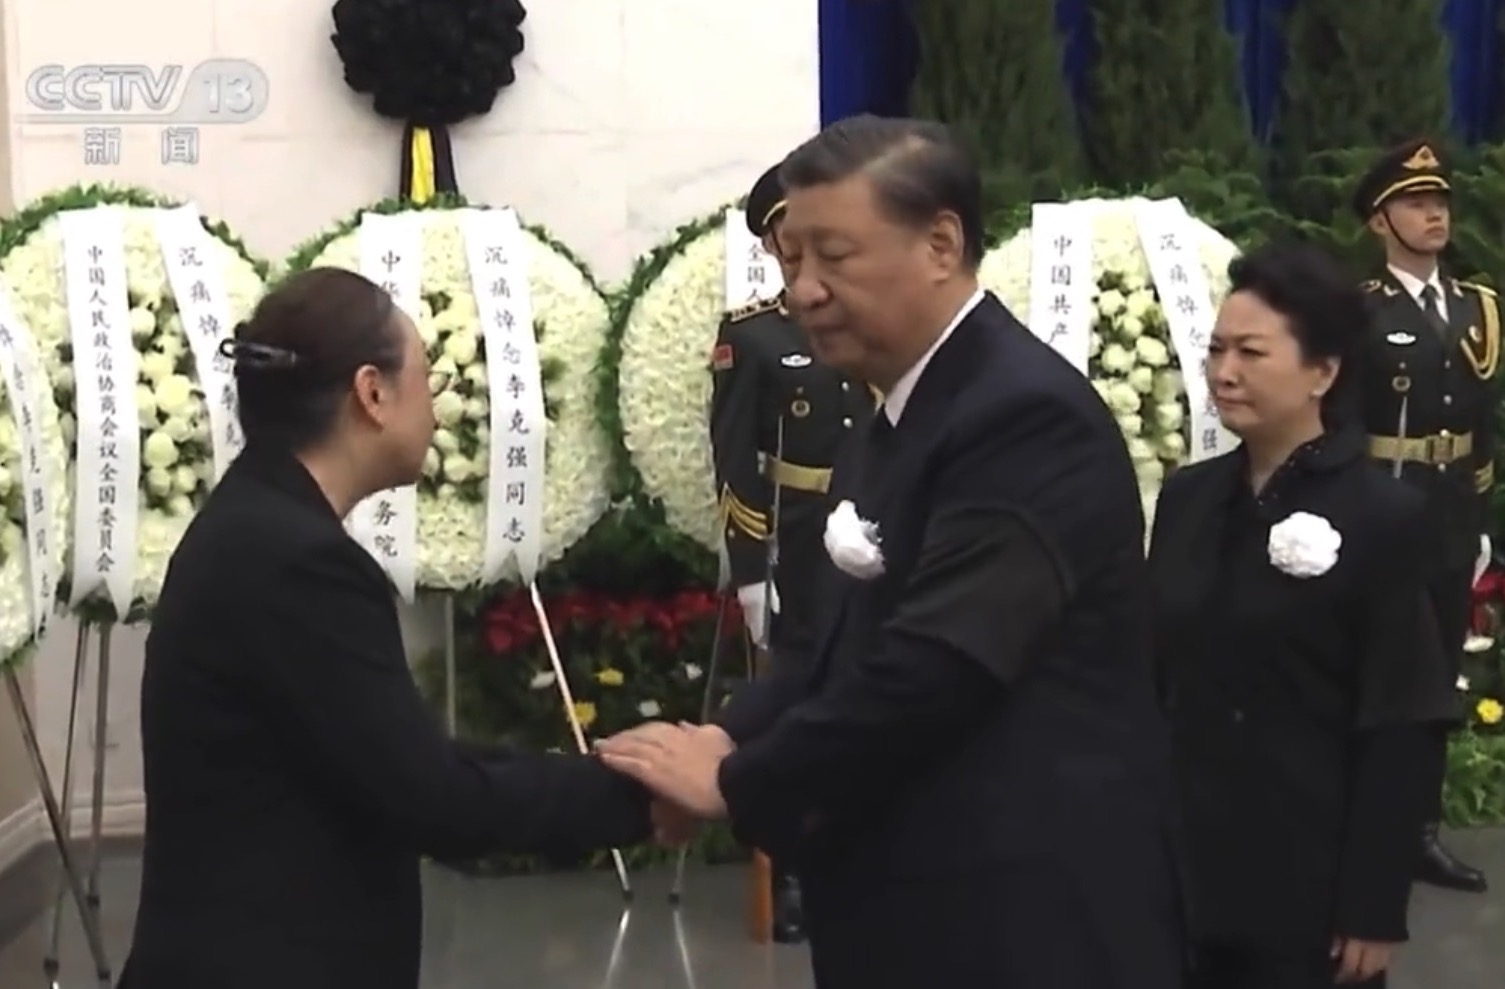 Tổng Bí thư Đảng Cộng sản Trung Quốc Tập Cận Bình đã bắt tay bà Trình Hồng tại lễ tiễn đưa thi hài ông Lý Khắc Cường. Bà Bành Lệ Viện lộ vẻ đau buồn. Ảnh chụp hôm 02/11/2023. (Ảnh chụp màn hình từ CCTV News)